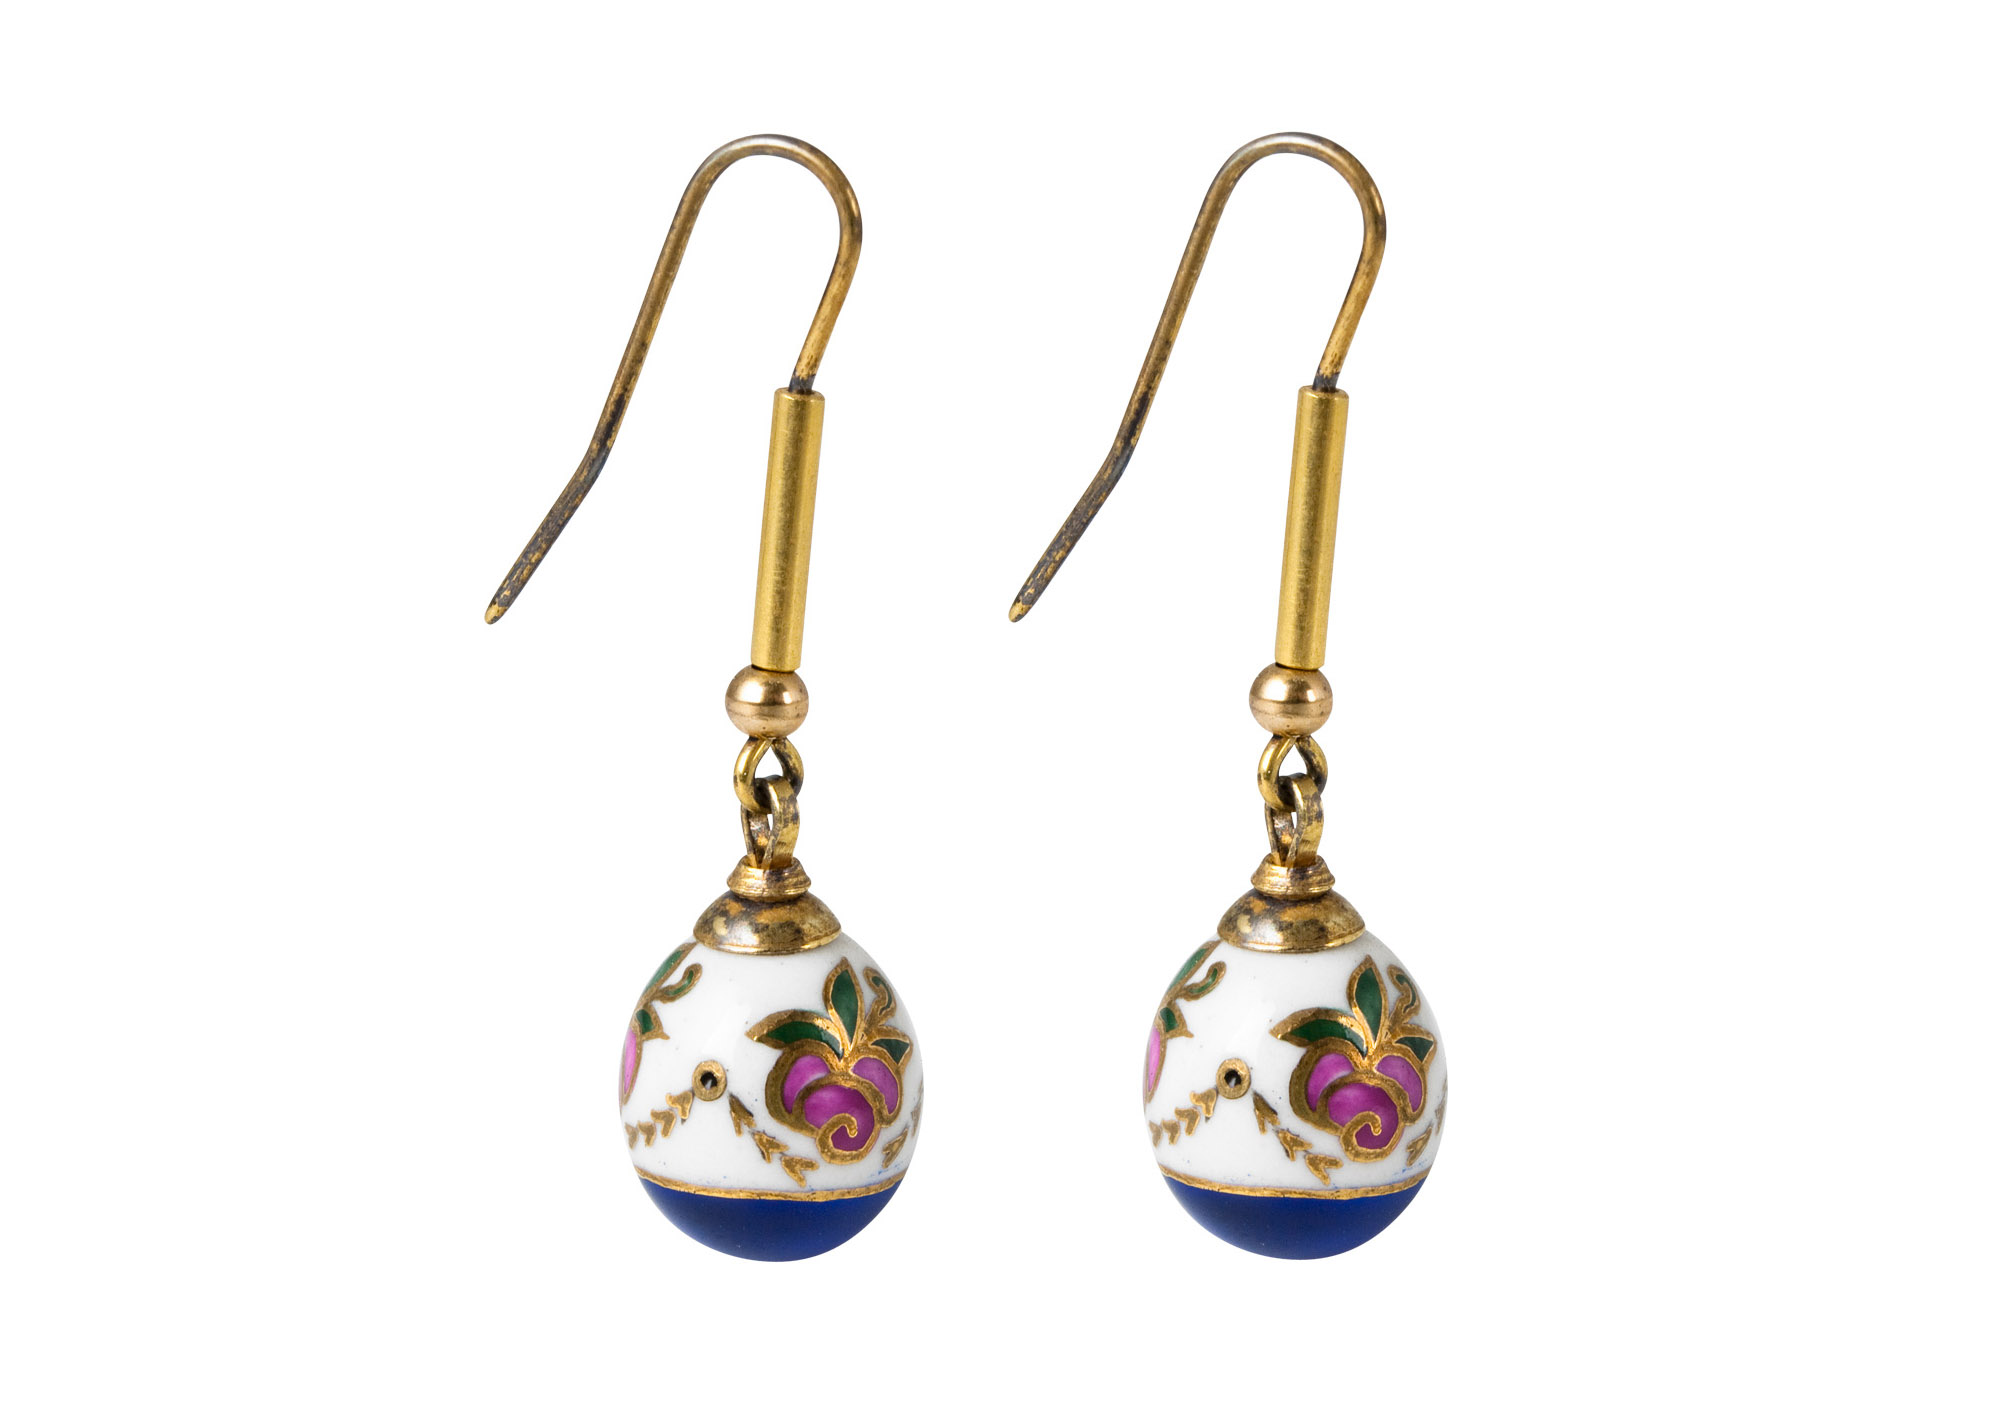 Buy Anastasia Porcelain Earrings at GoldenCockerel.com